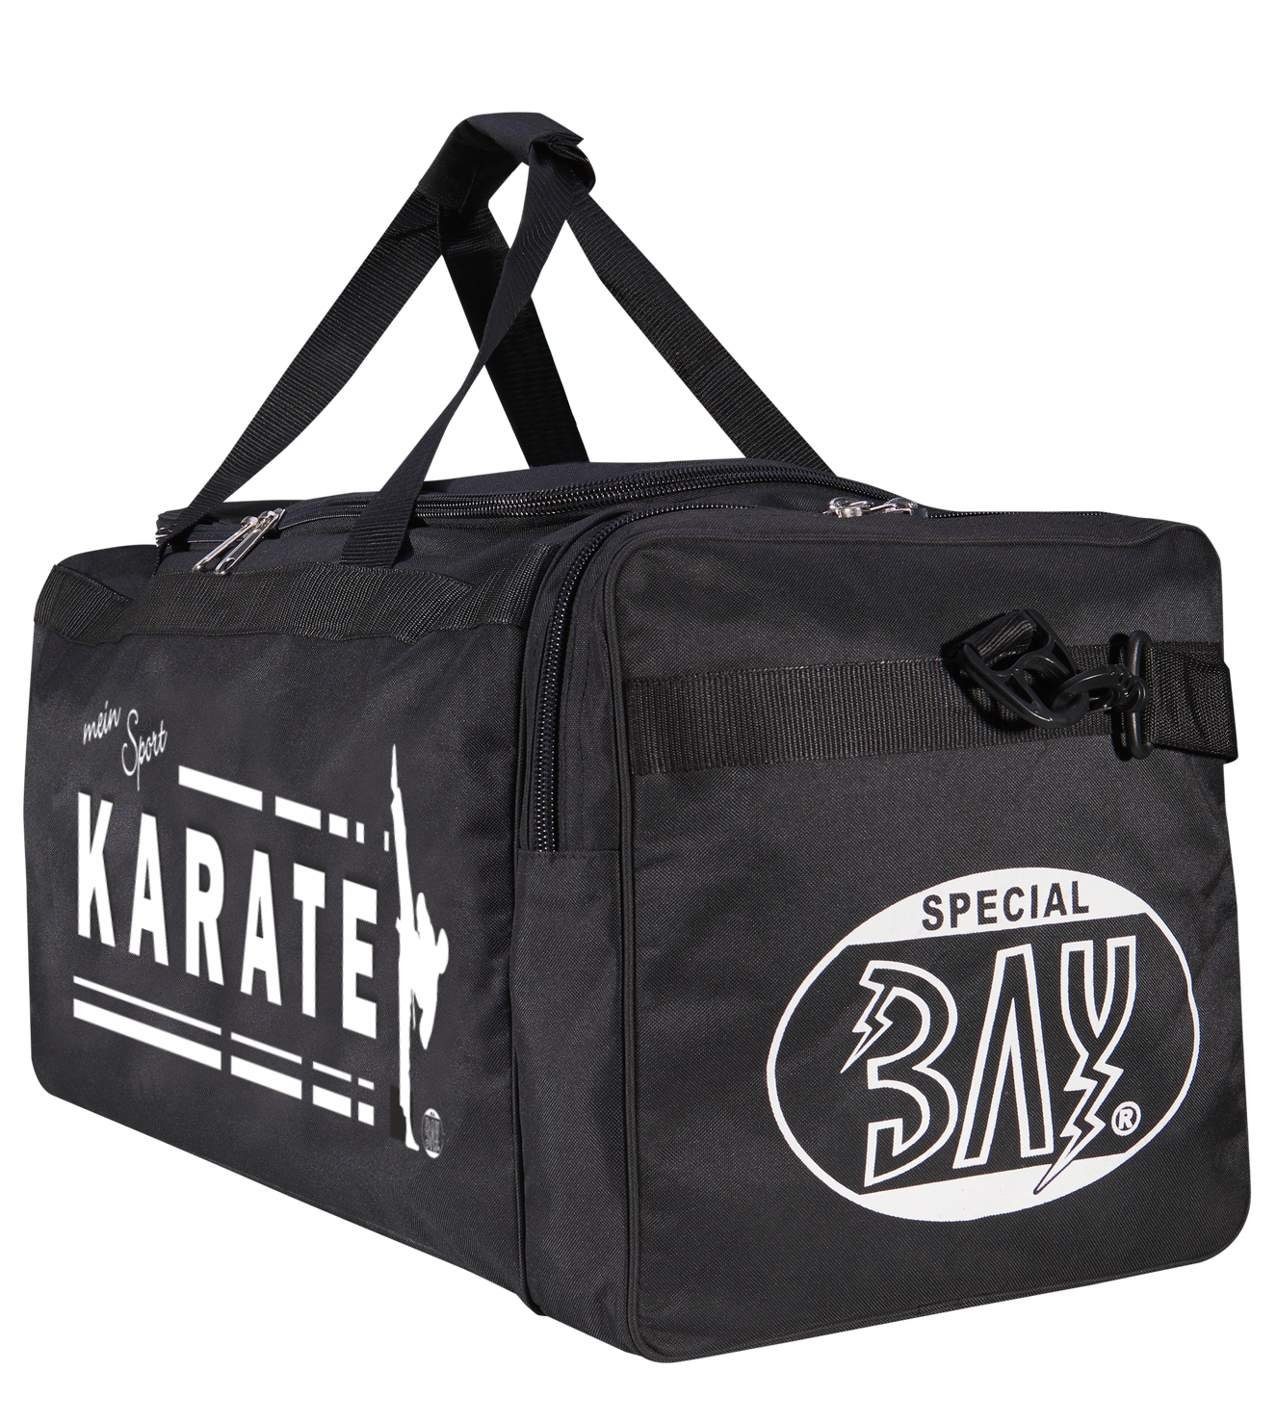 cm Sporttasche Karate 70 schwarz mein BAY-Sports Sport Sporttasche